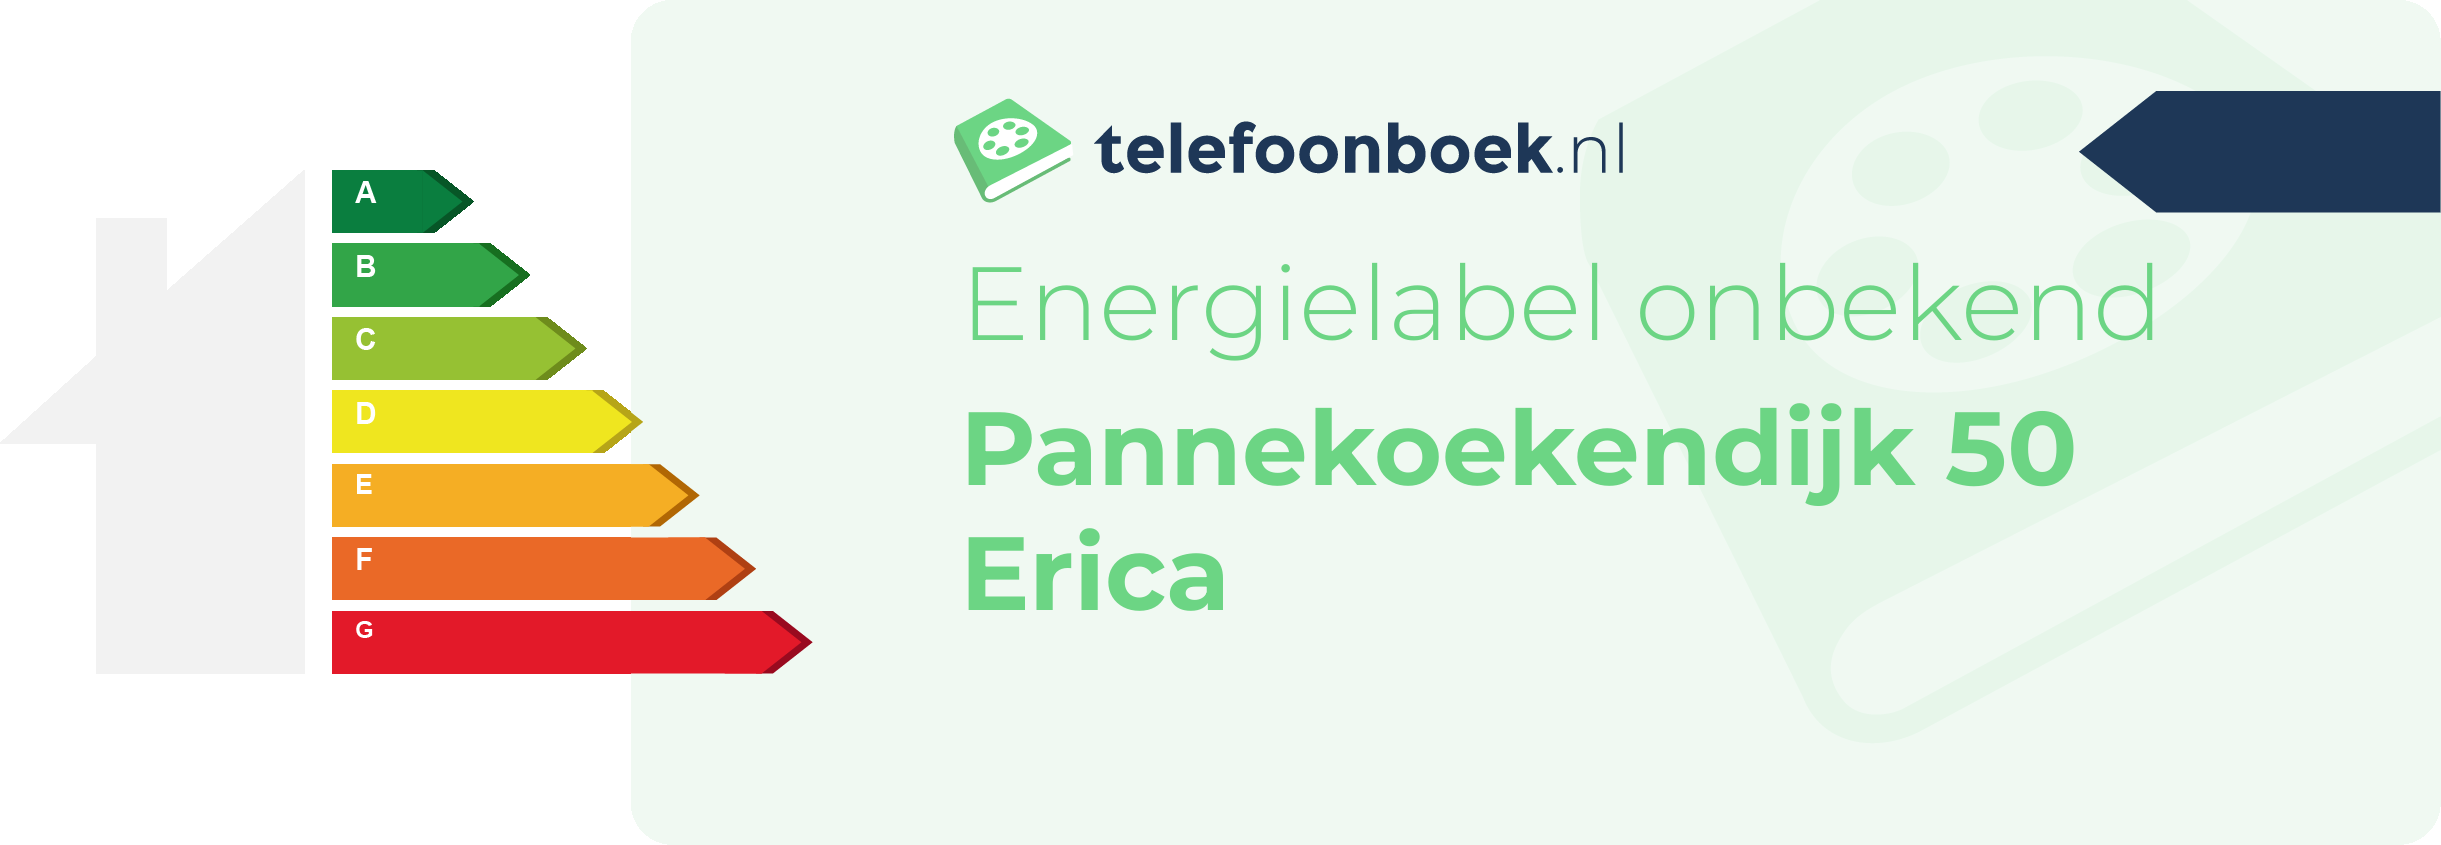 Energielabel Pannekoekendijk 50 Erica